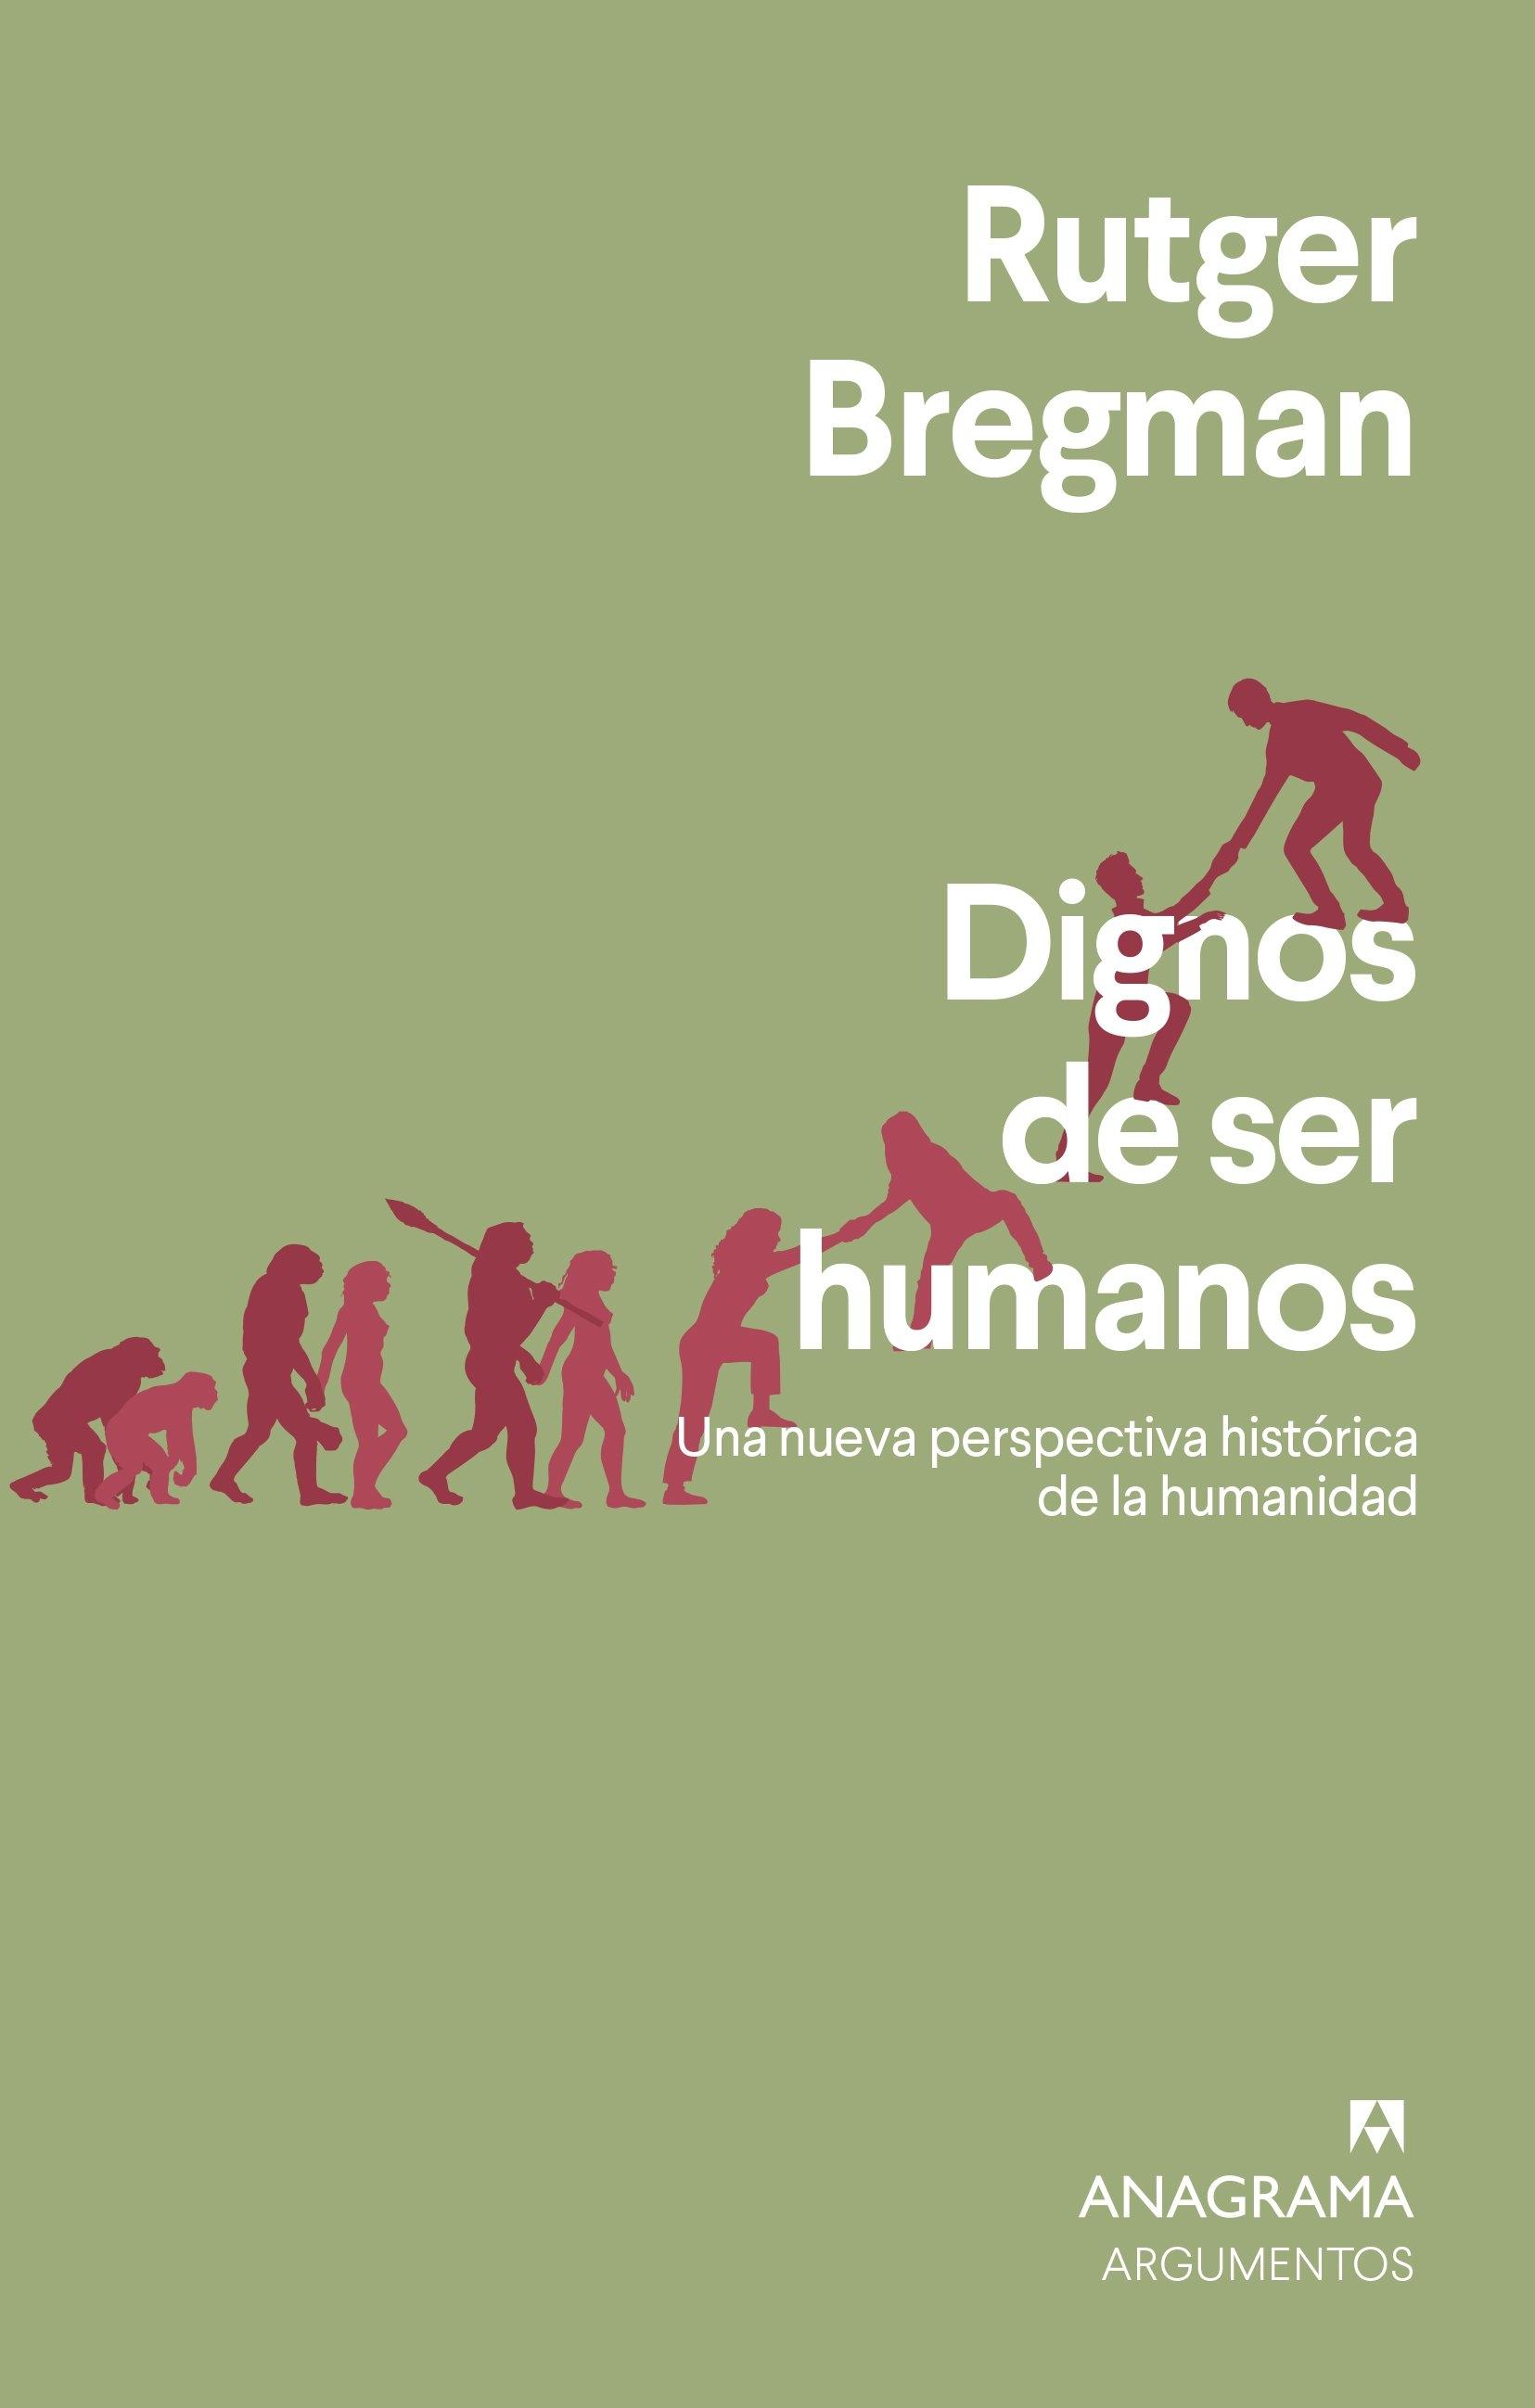 Dignos de ser humanos "Una nueva perspectiva histórica de la humanidad"